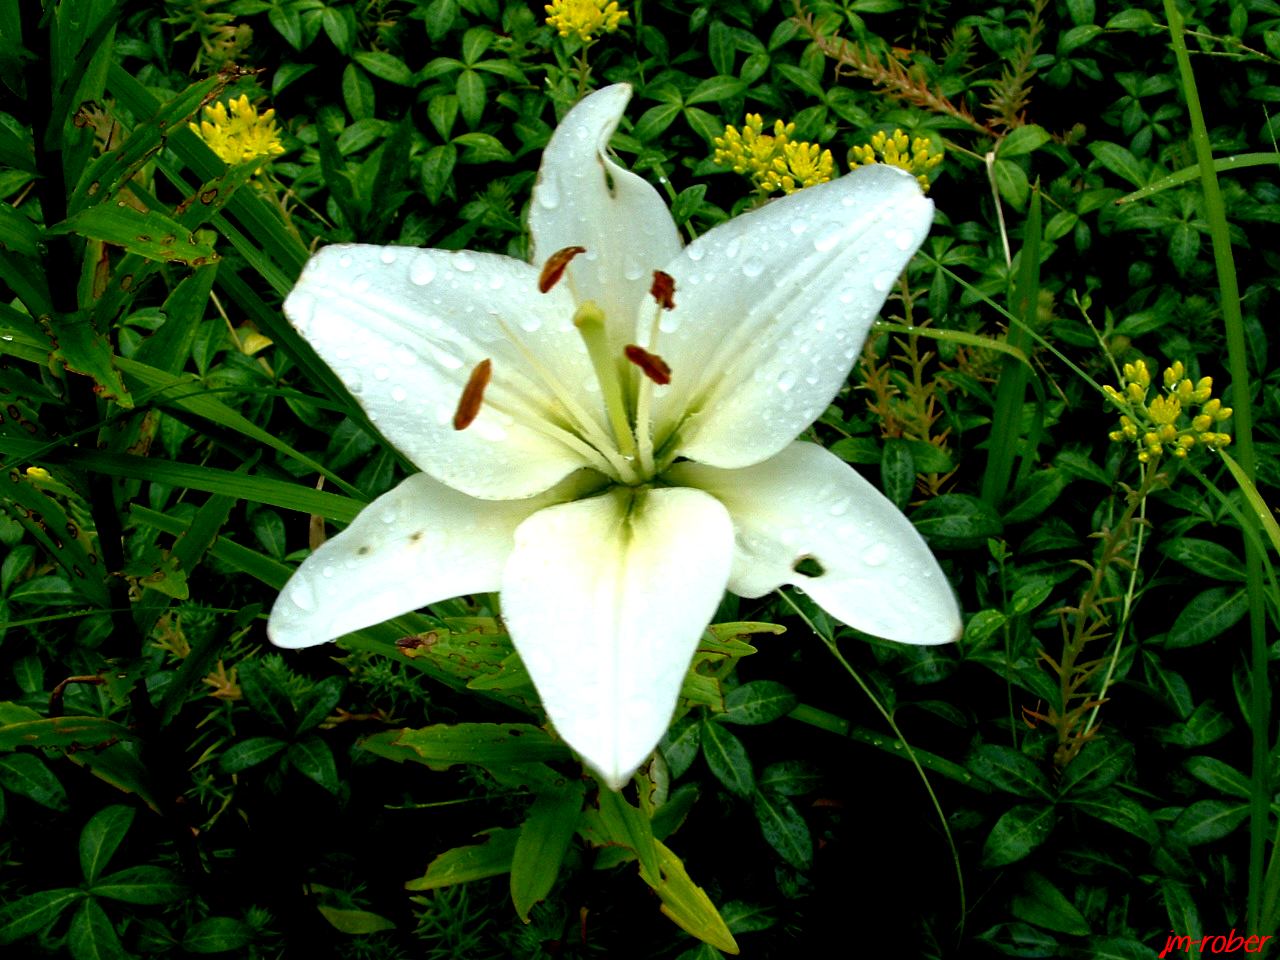 Le lis ou lys blanc ? une plante pleine de pouvoirs - Le blog de jm.rober